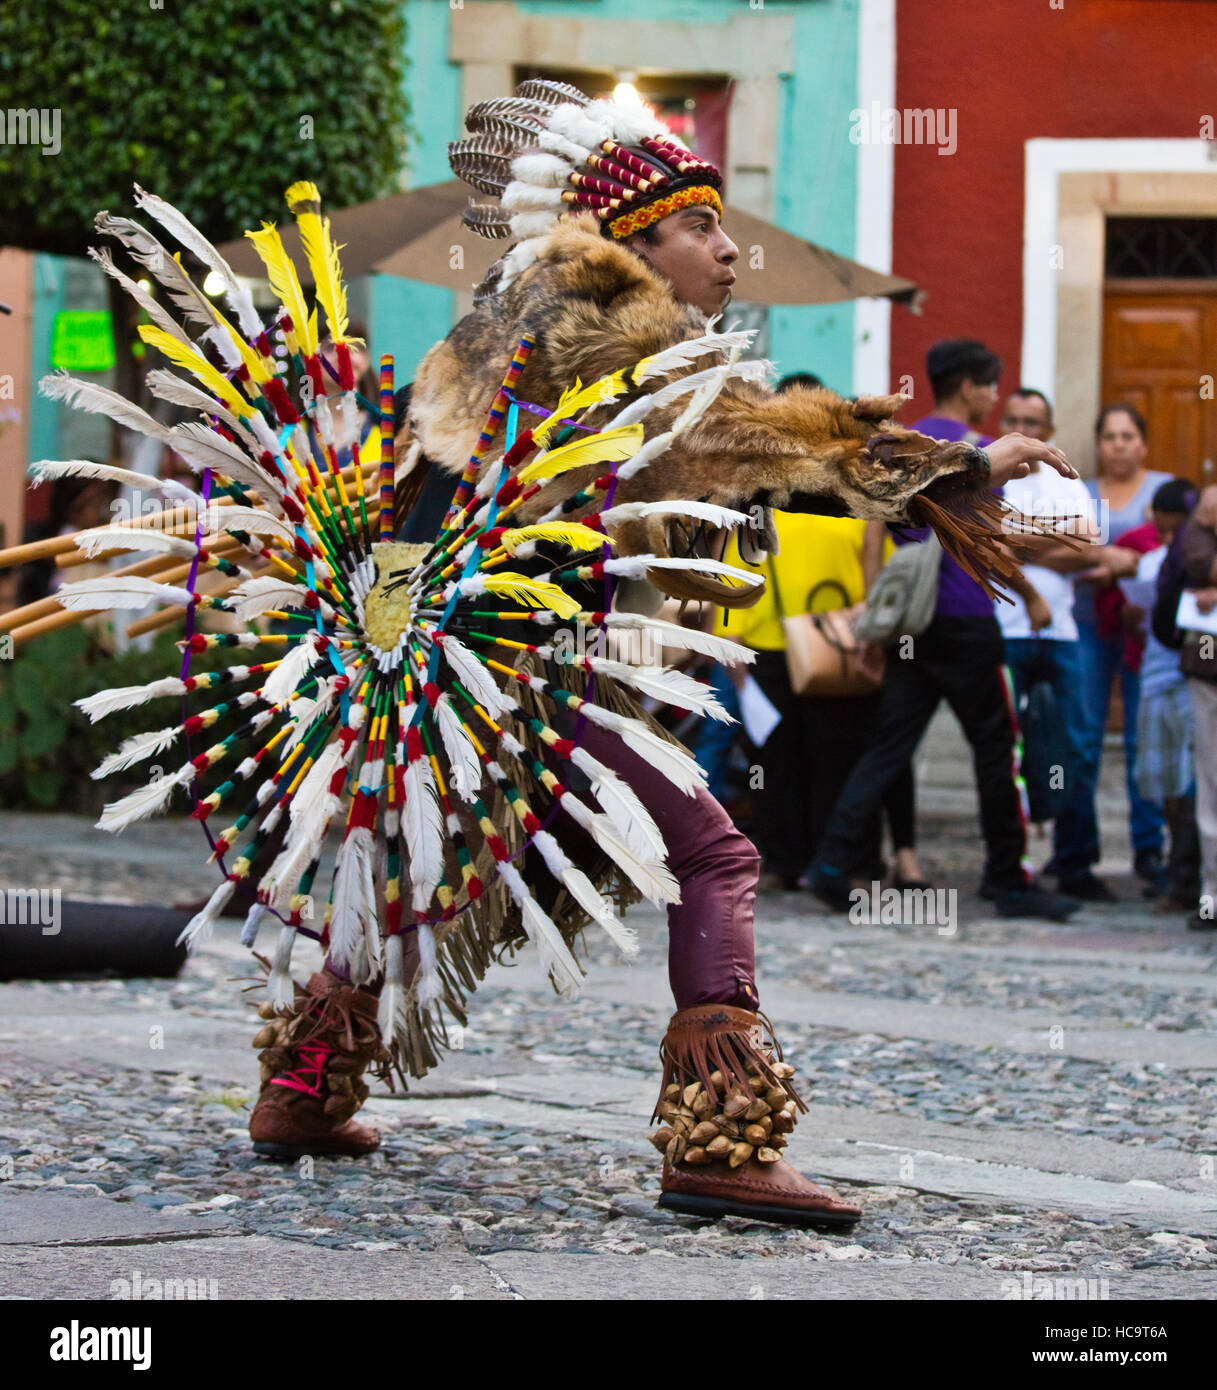 Le groupe équatorien RUNAS INTI joue flûte de pan et des danses traditionnelles en costume Indiginous - Guanajuato, Mexique Banque D'Images